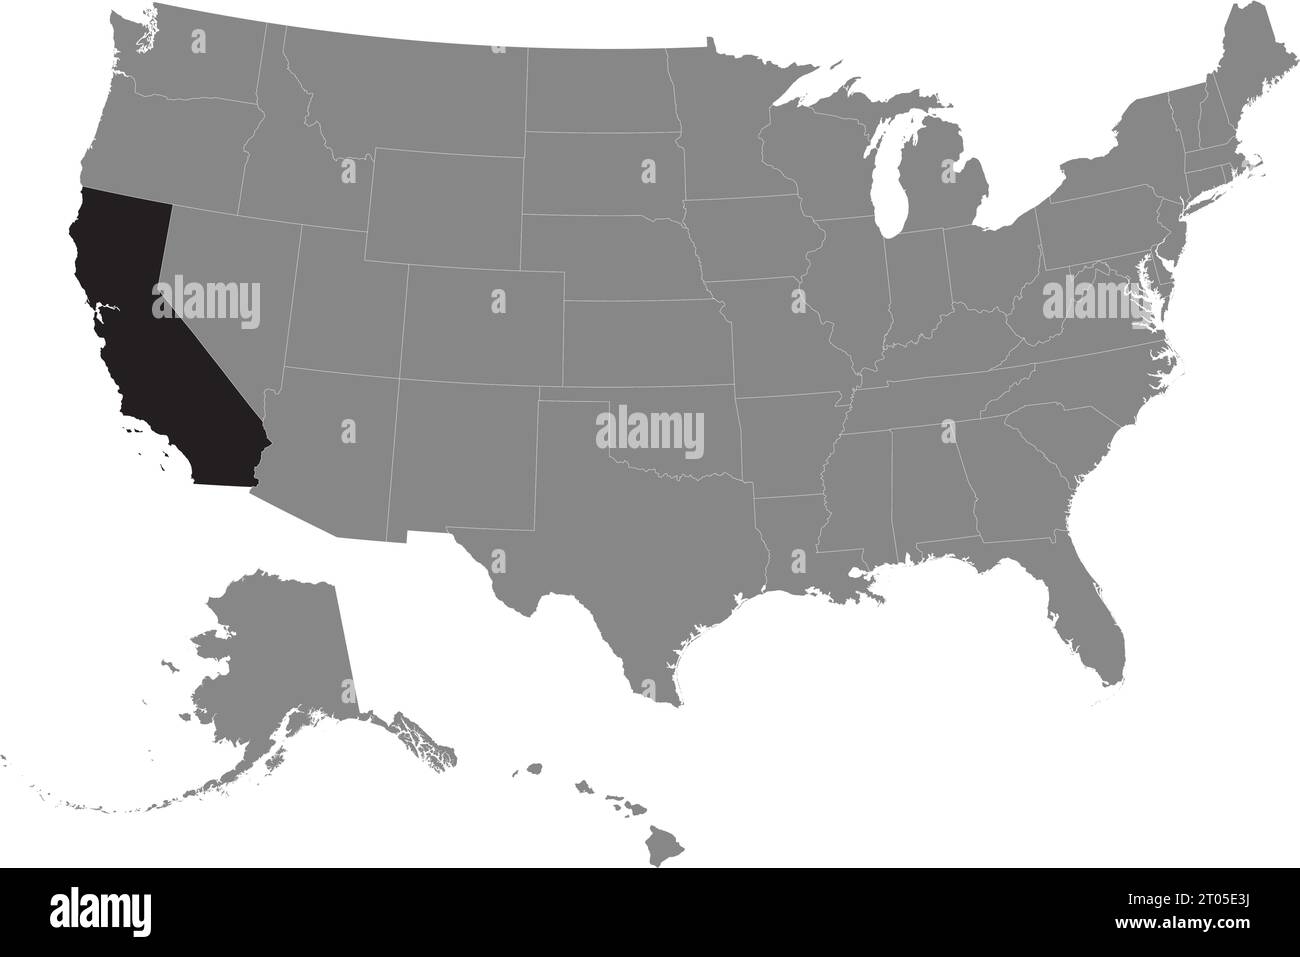 Schwarze CMYK-Bundeskarte von KALIFORNIEN in detaillierter grauer, leerer politischer Karte der Vereinigten Staaten von Amerika auf transparentem Hintergrund Stock Vektor